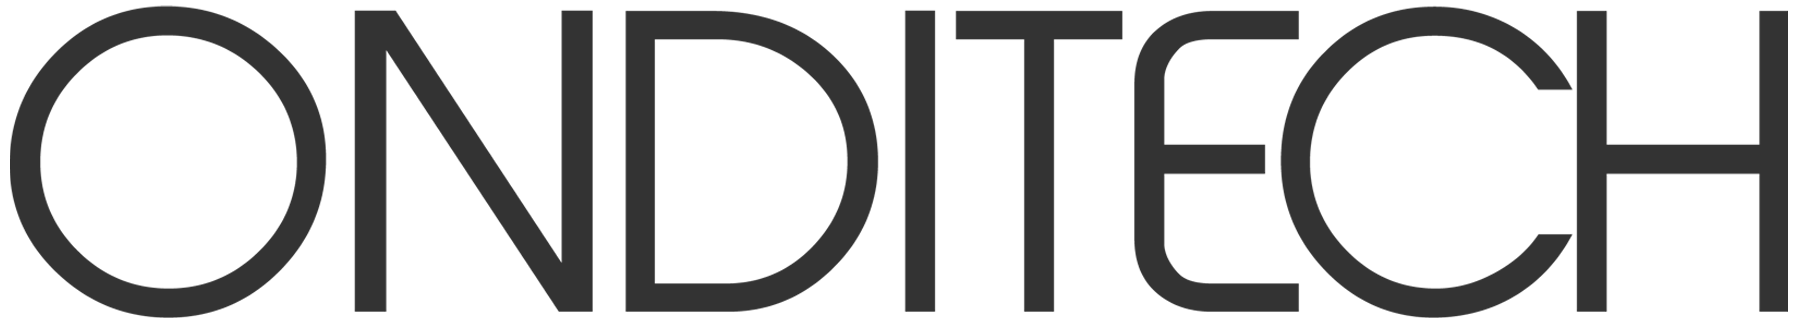 onditech logo text